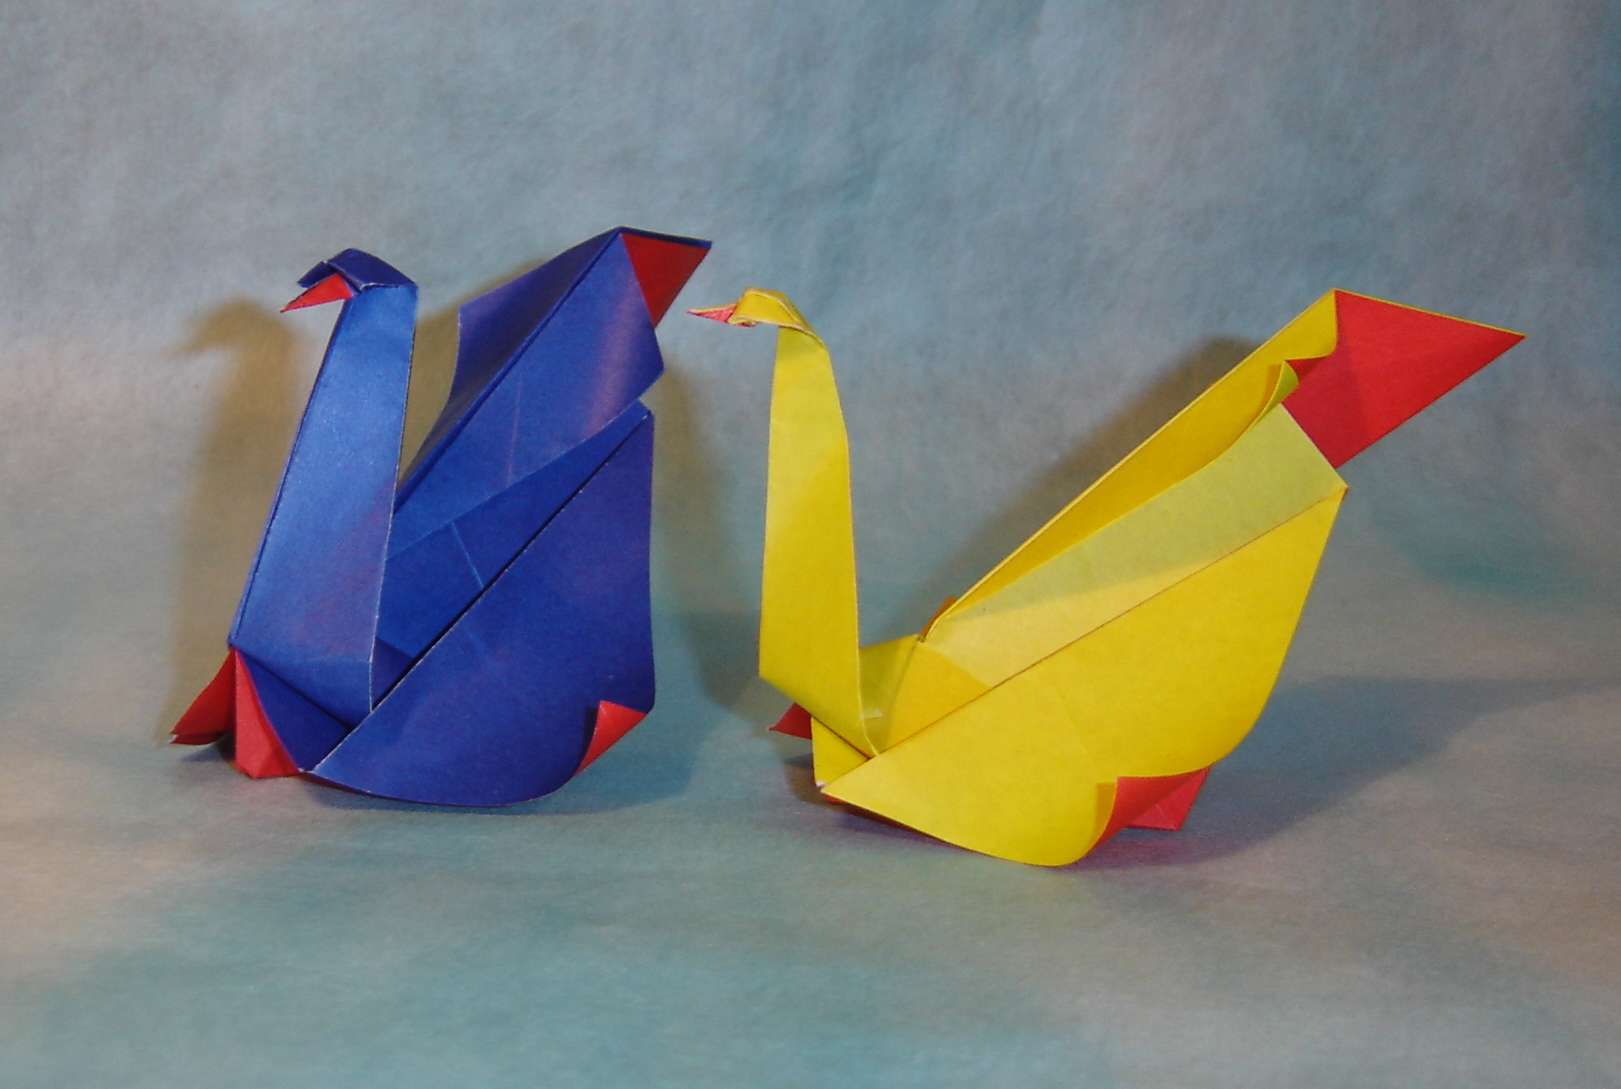 Техника оригами из бумаги: пошаговые мастер-классы с фото сделанные своими руками